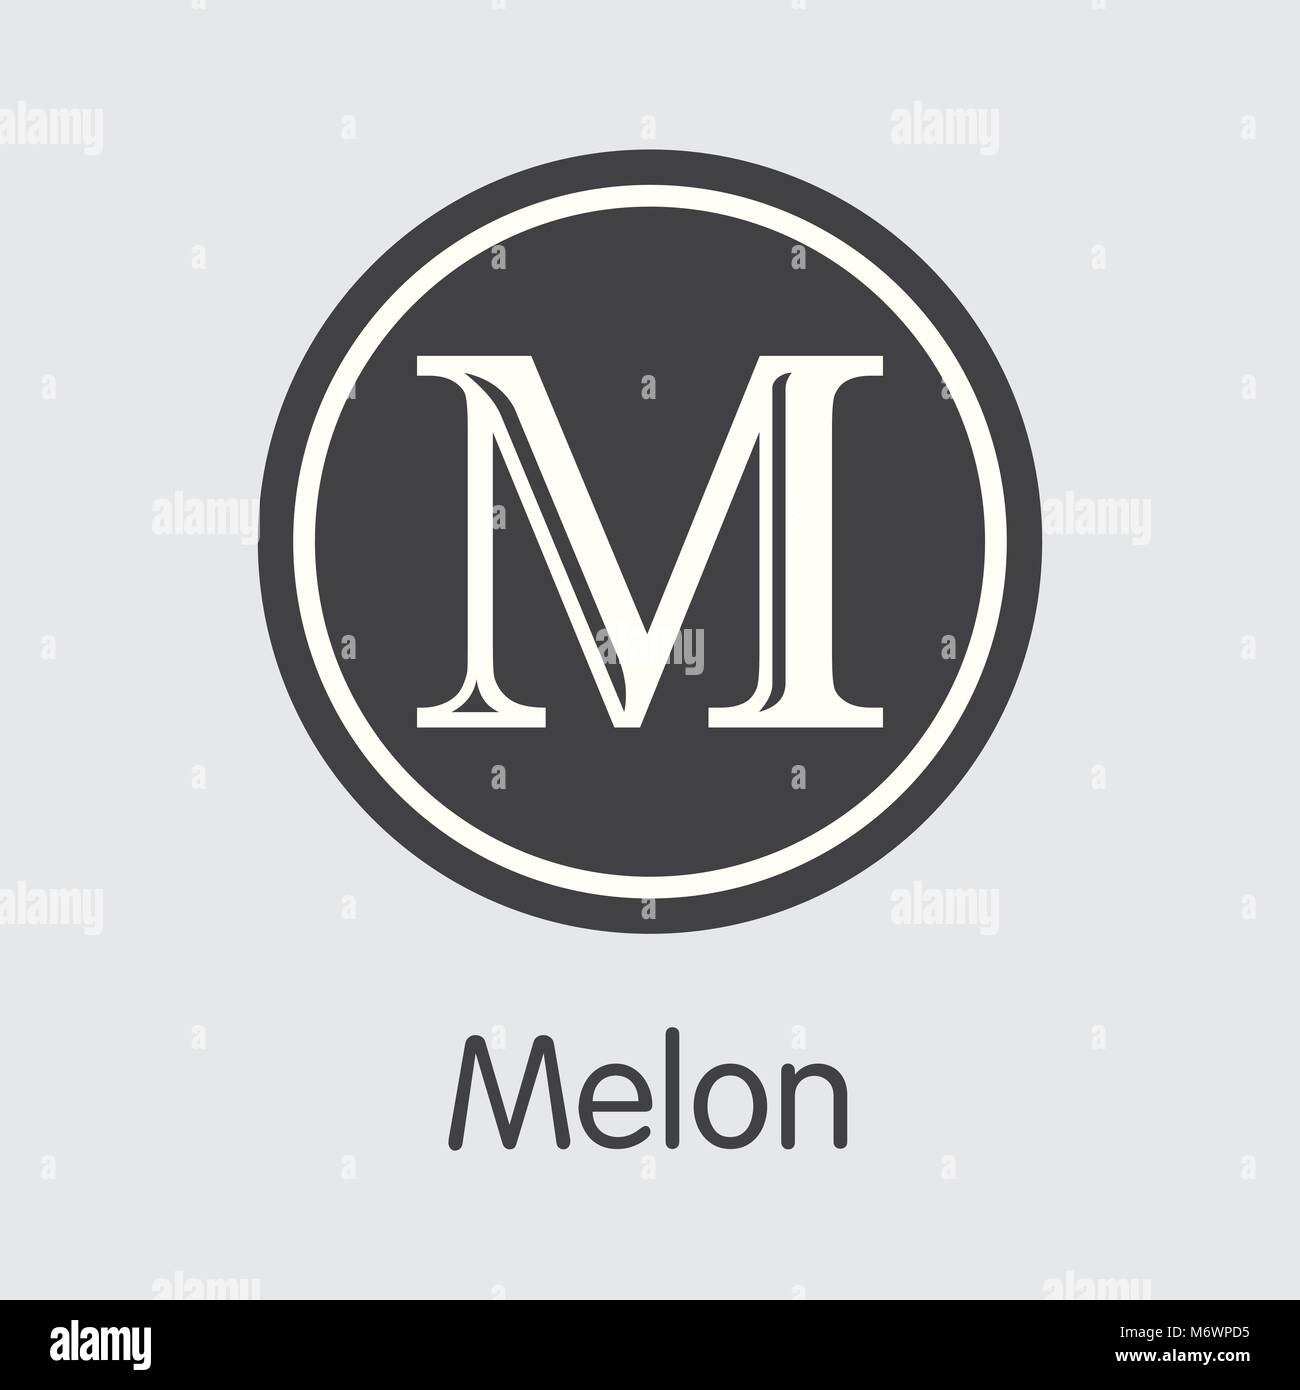 Melon Crypto Currency Coin. Vector Coin Symbol of MLN. Stock Vector